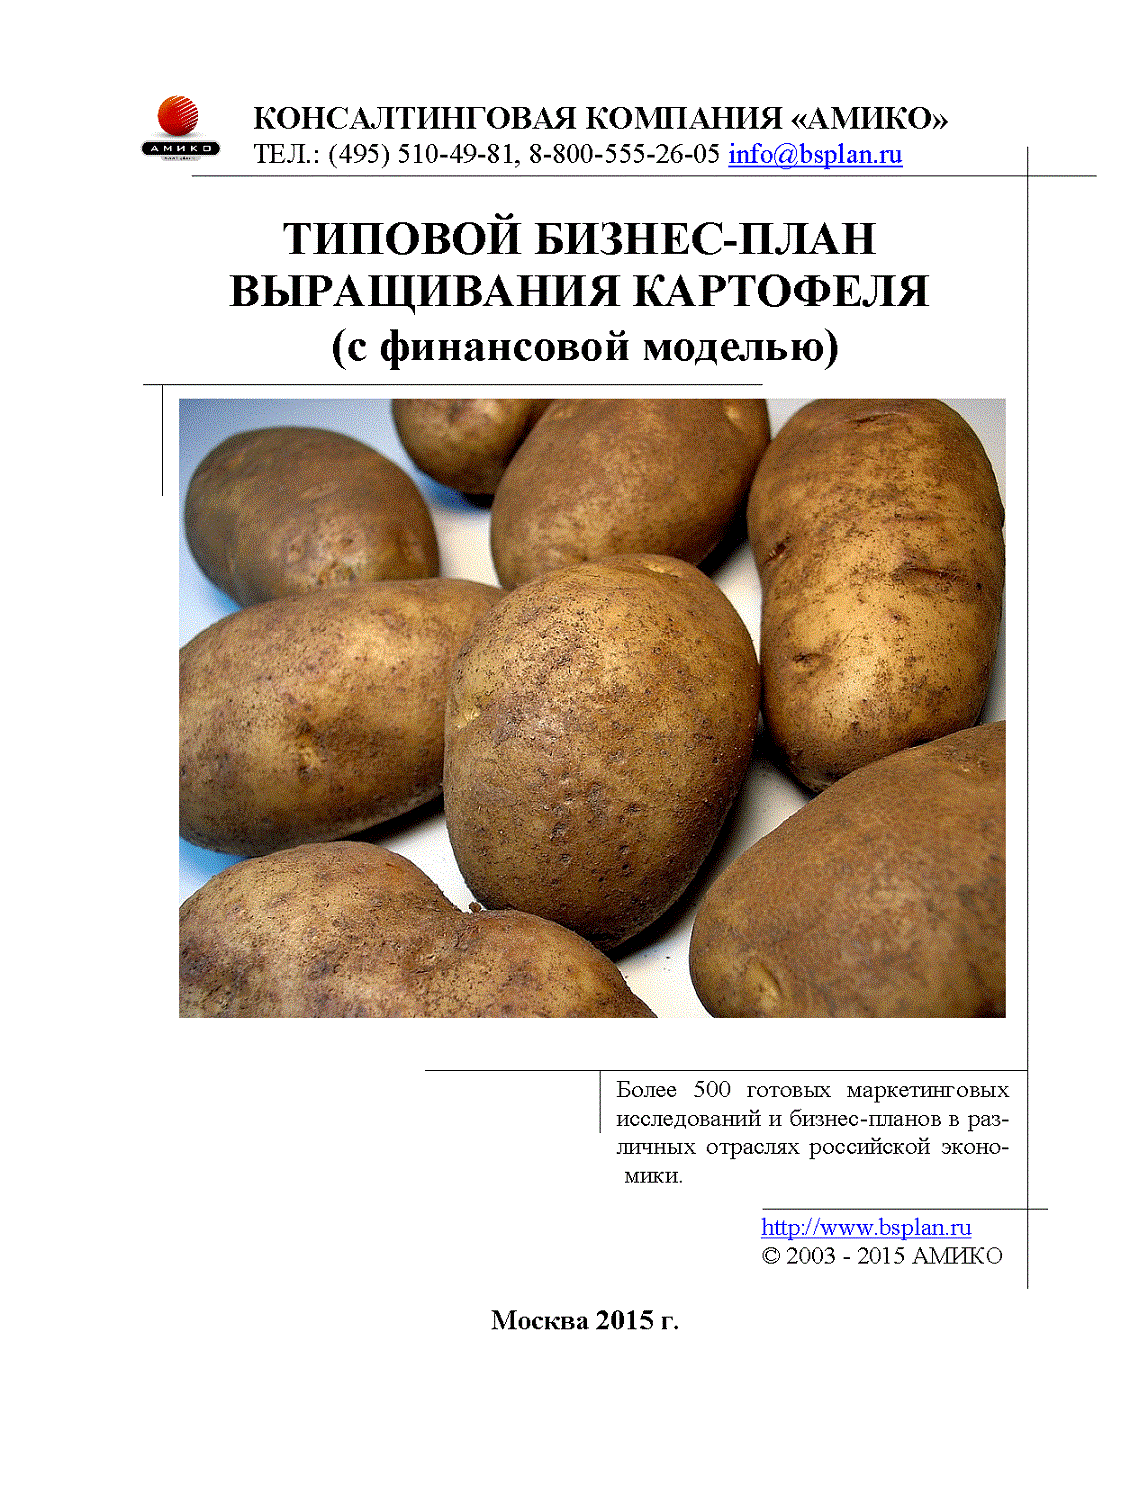 Рентабельность выращивания картофеля на продажу как бизнеса в россии